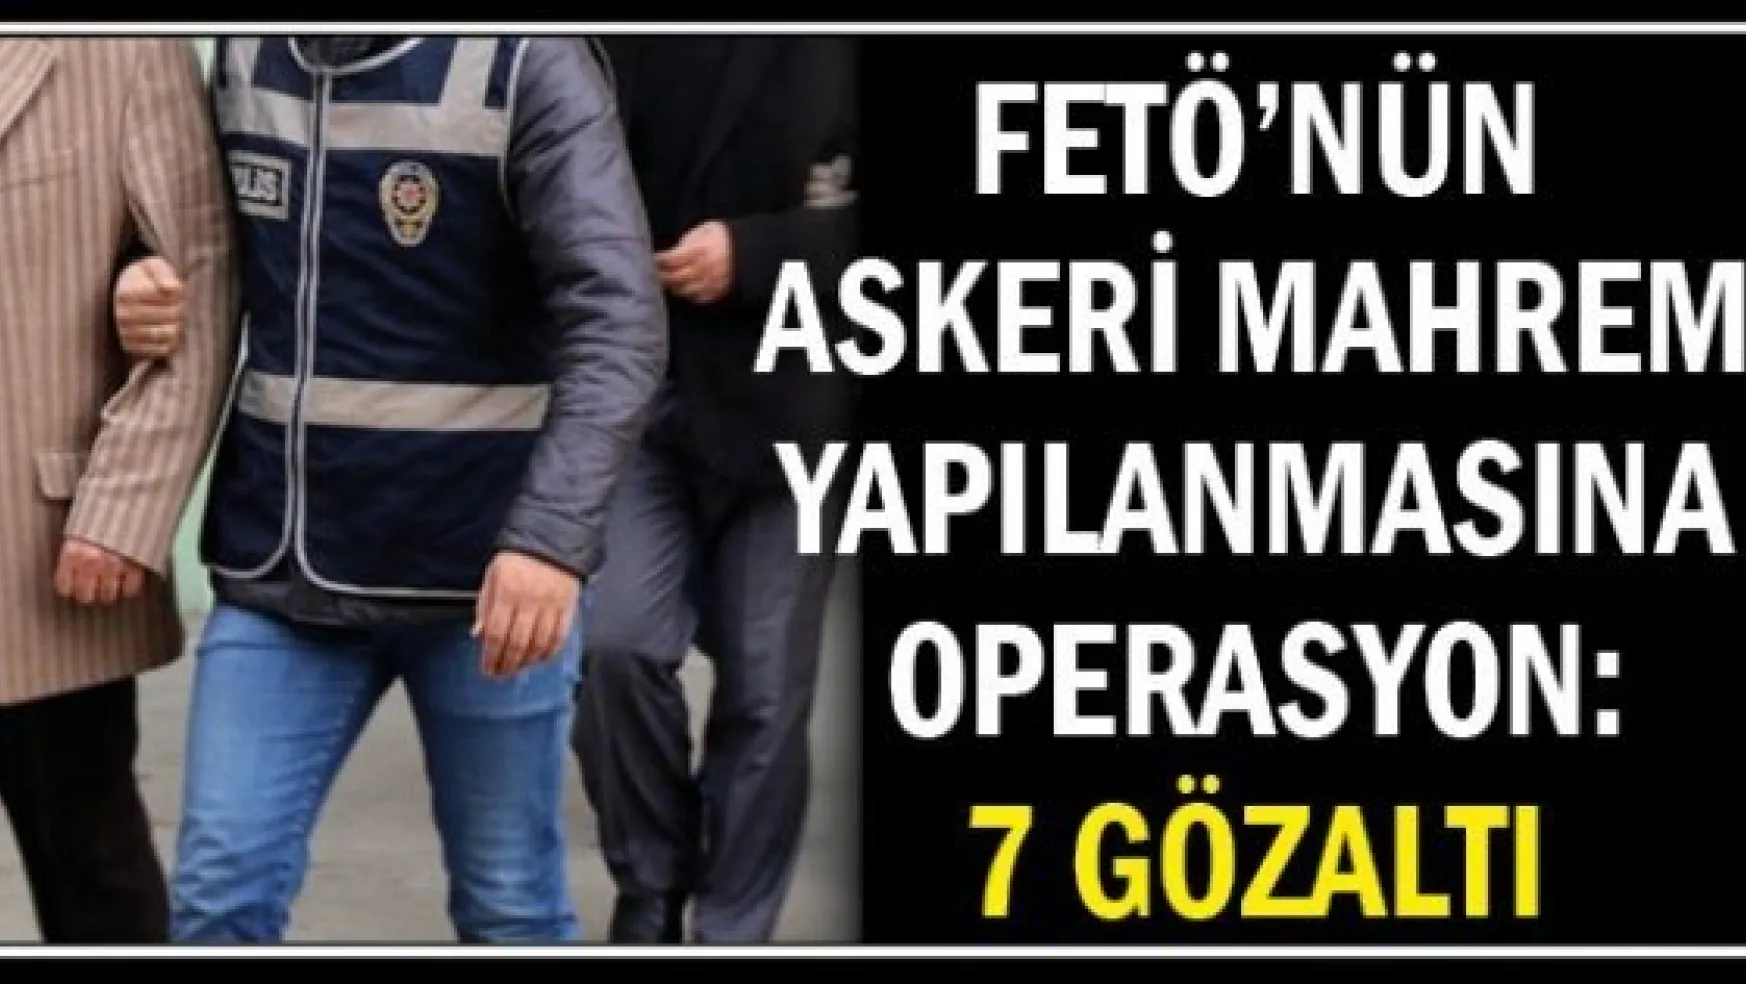 FETÖ'nün askeri mahrem yapılanmasına operasyon: 7 gözaltı